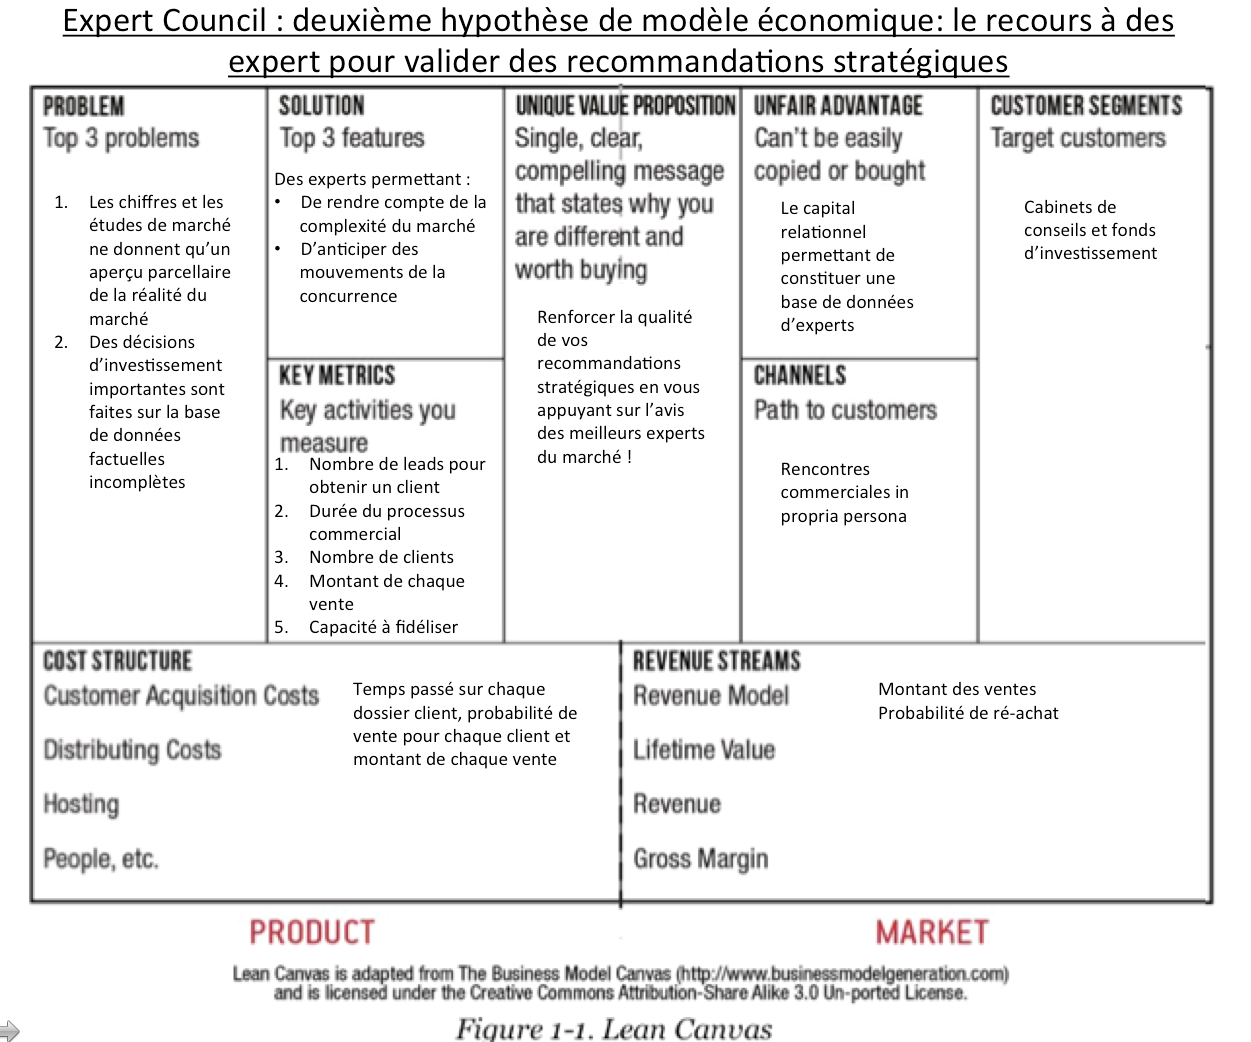 Représentation approximative du second modèle économique (Lean Canevas) d'Expert Council